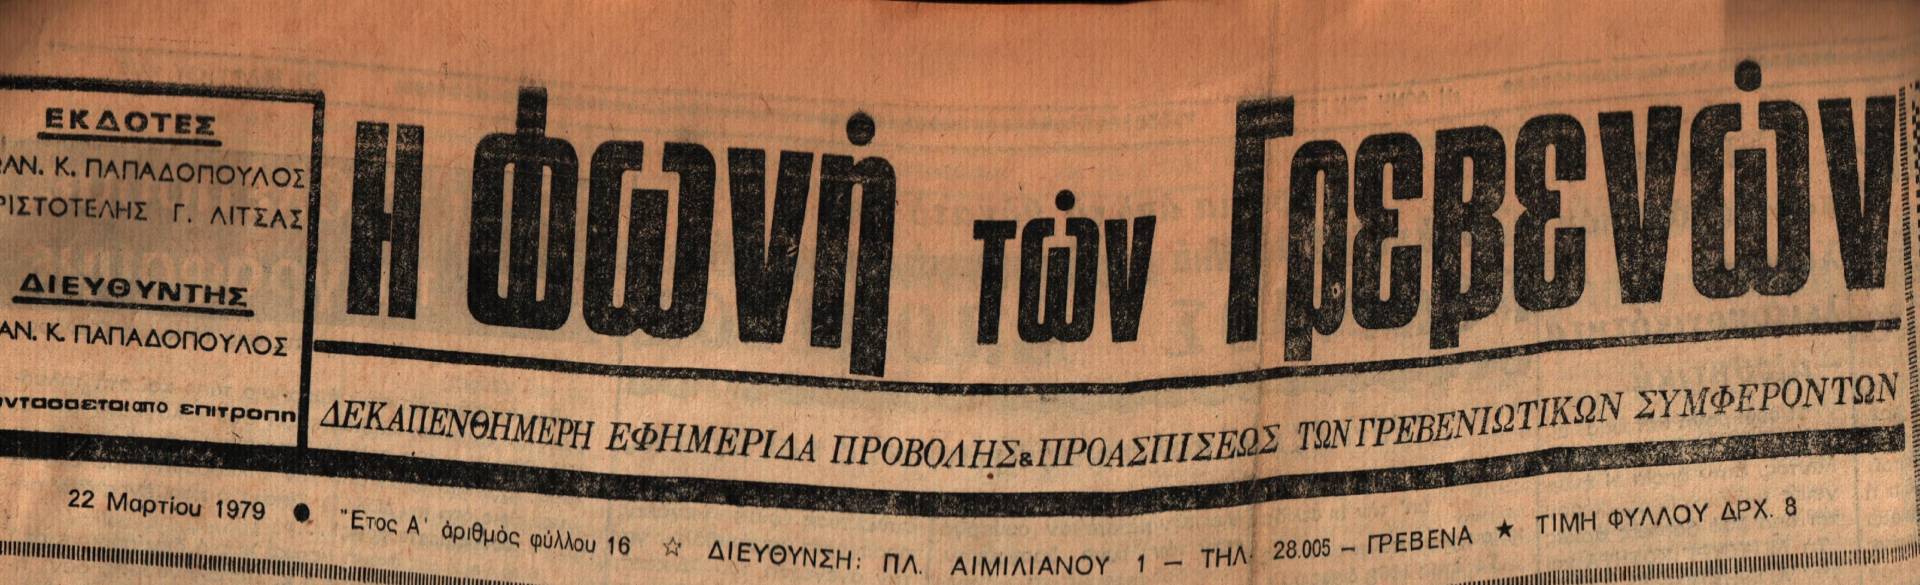 22 Μαρτίου 1979: Η ιστορία των Γρεβενών μέσα από τον Τοπικό Τύπο.Σήμερα:Μεγάλη η επιτυχία του χορού Δοτσικιωτών Αθήνας